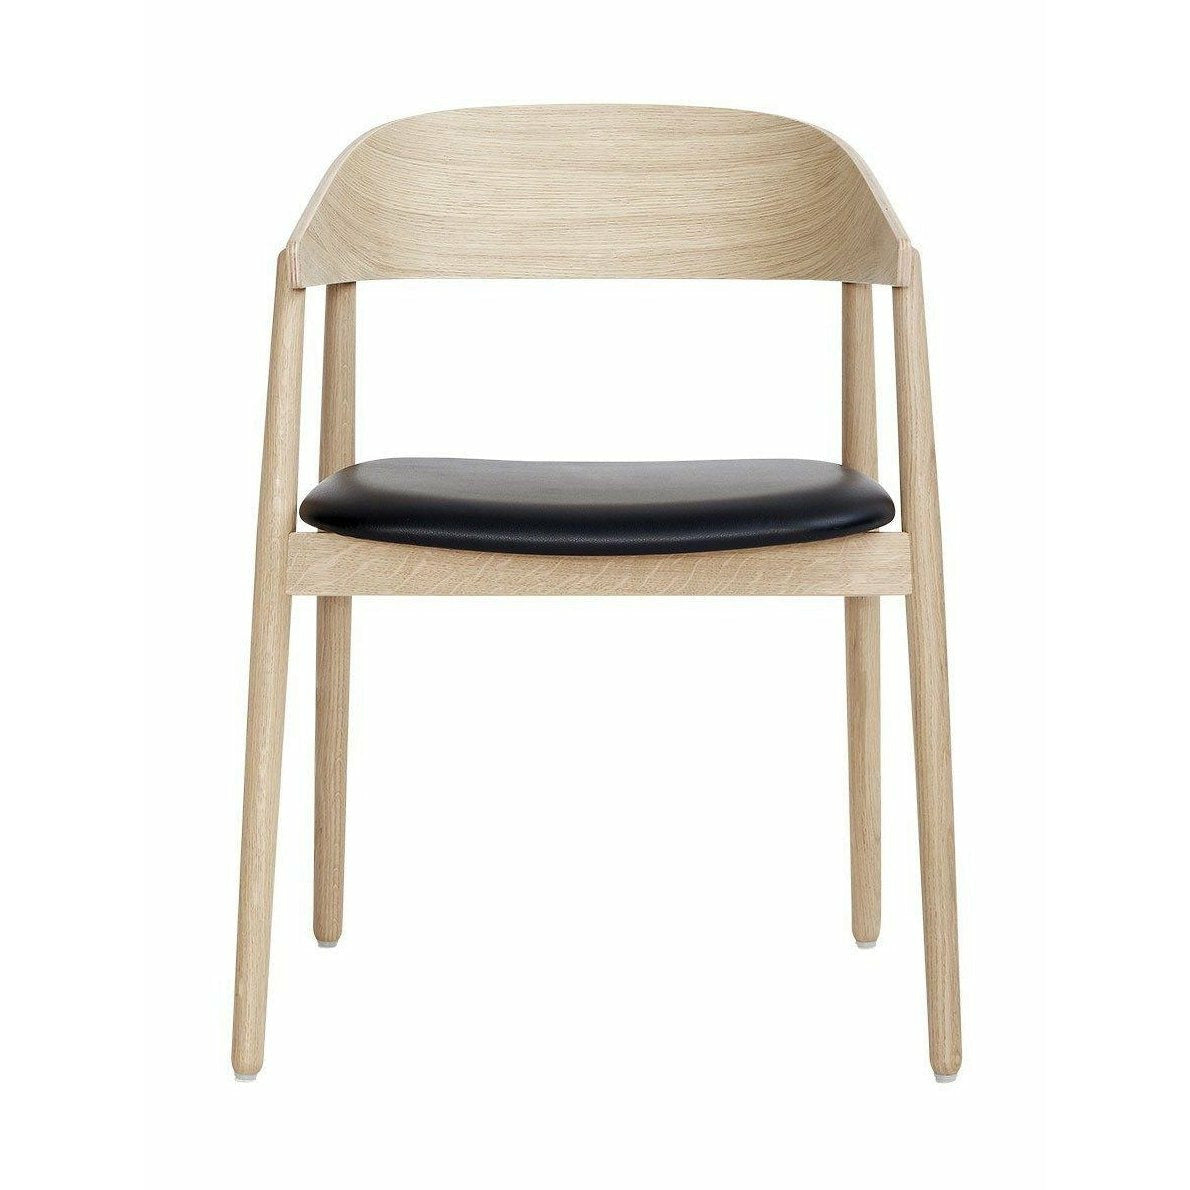 Andersen Furniture Ac2 Stuhl Eiche weiß pigmentiert lackiert, Sitz Leder schwarz